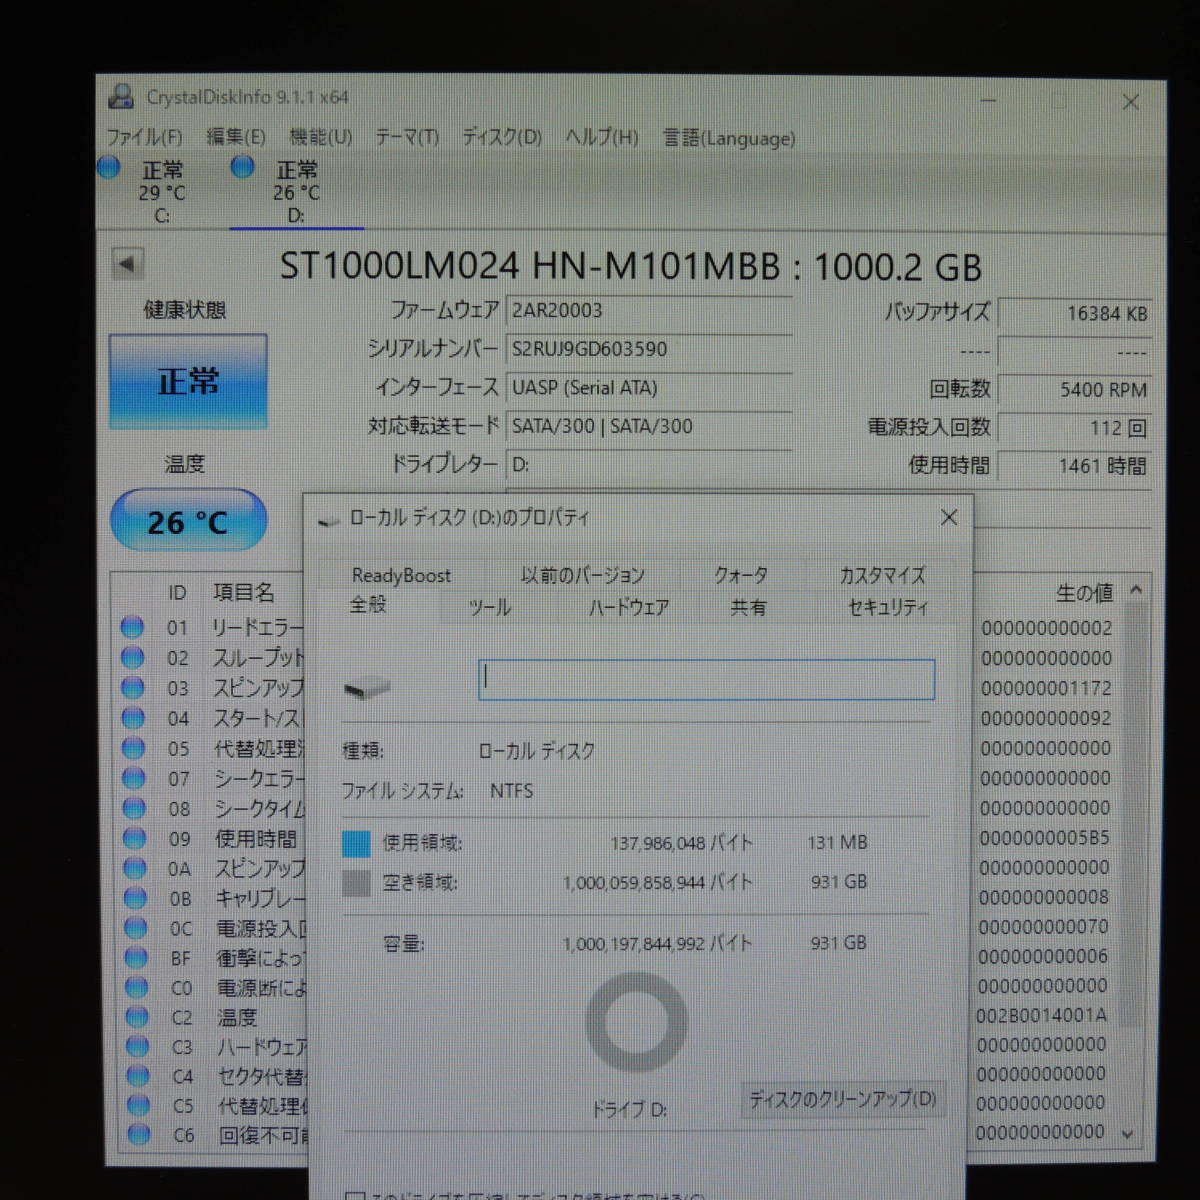 【2台まとめ売り/検品済み】SAMSUNG 1TB HDD ST1000LM024 【使用時間1461h・2134h】 管理:ケ-66_画像3